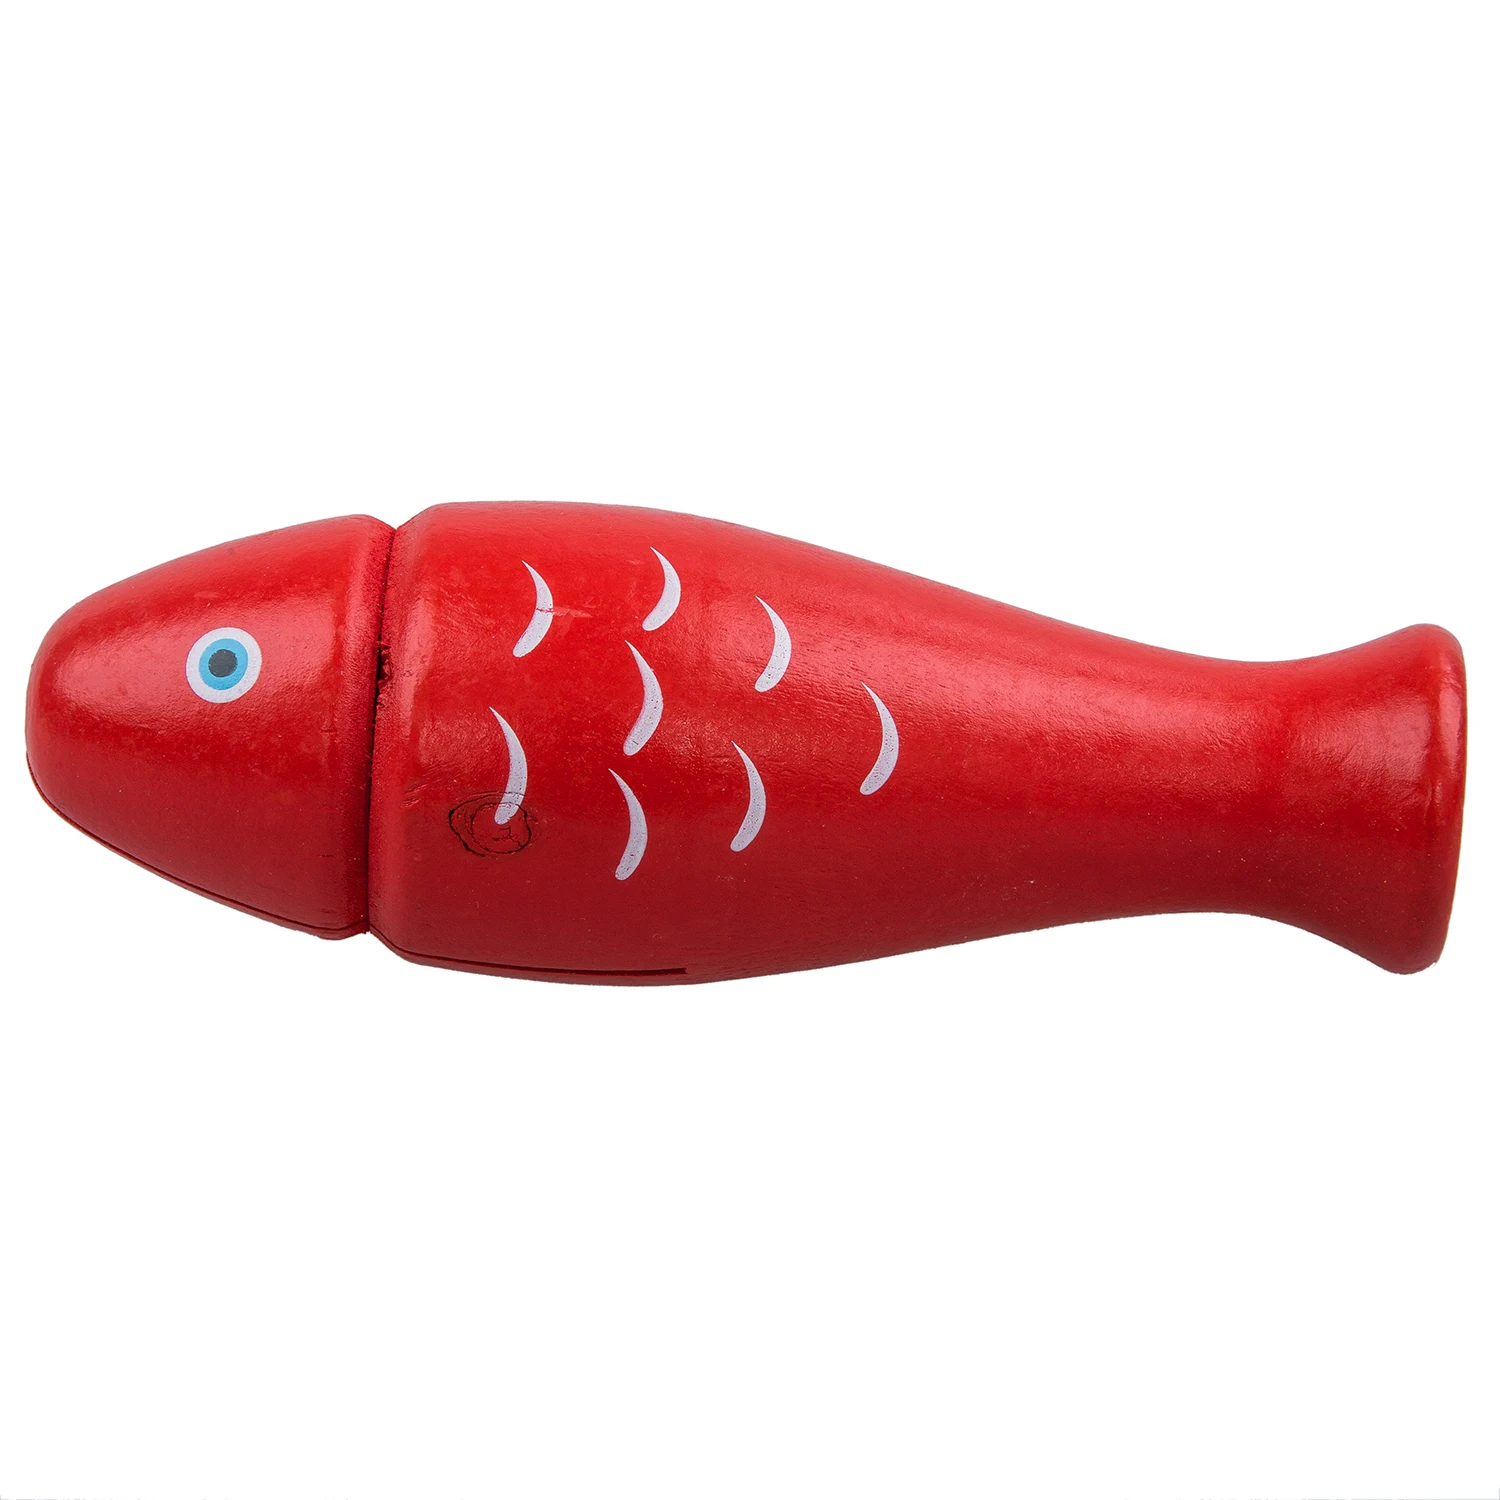 XFDZ-модная деревянная красная рыба игрушка ударный инструмент-красный